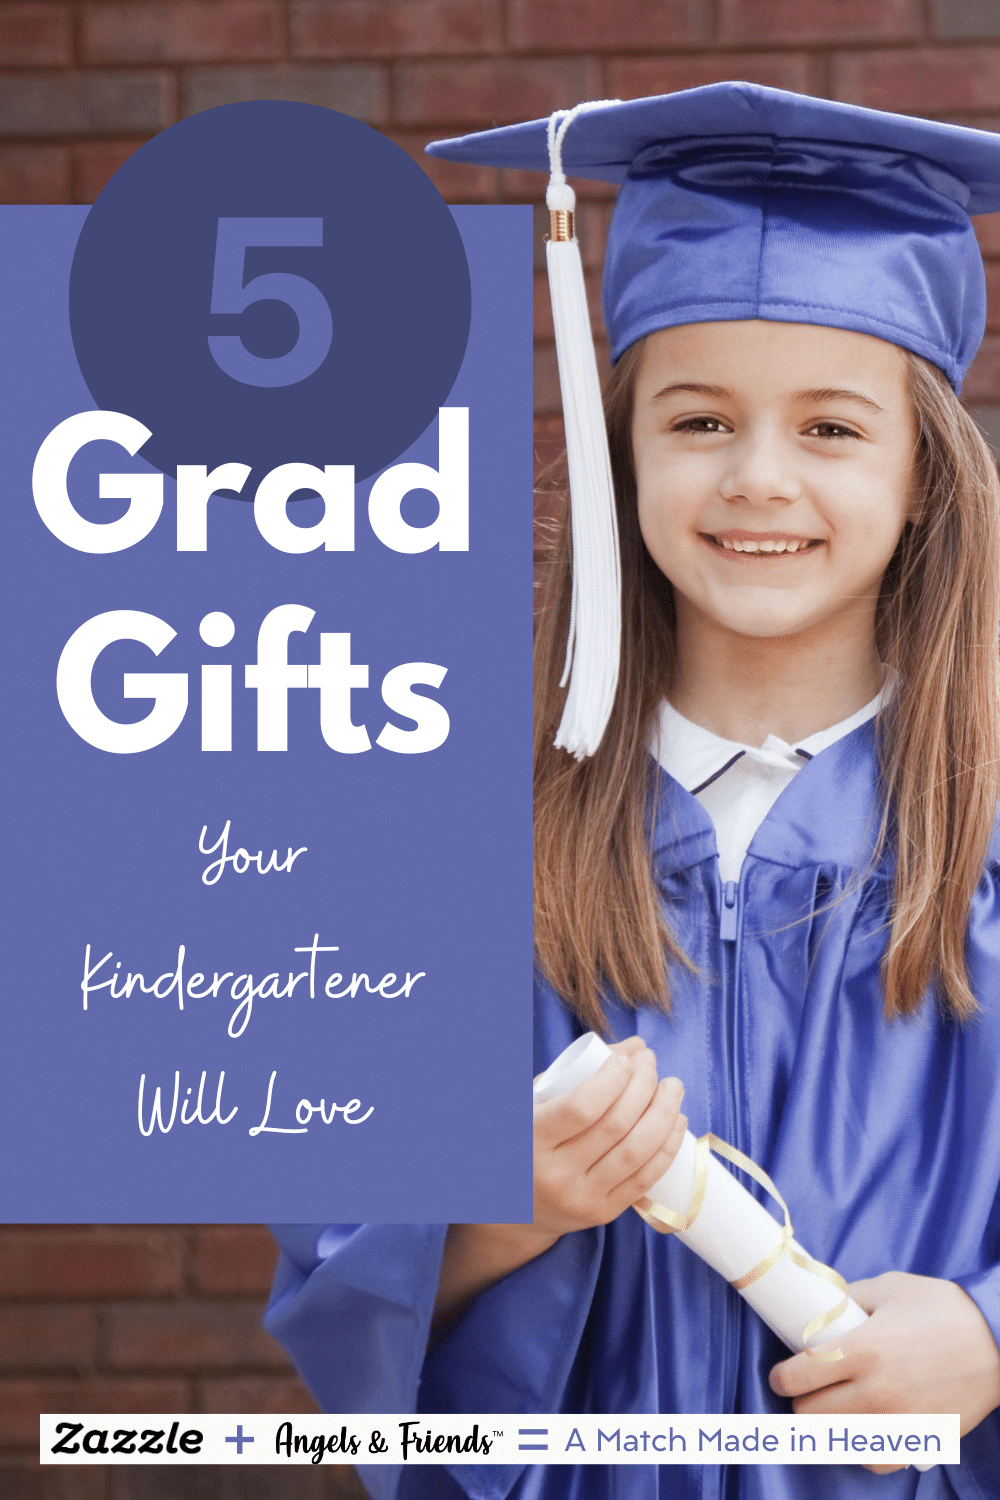 5 Grad Gifts Your Kindergartener Will Love